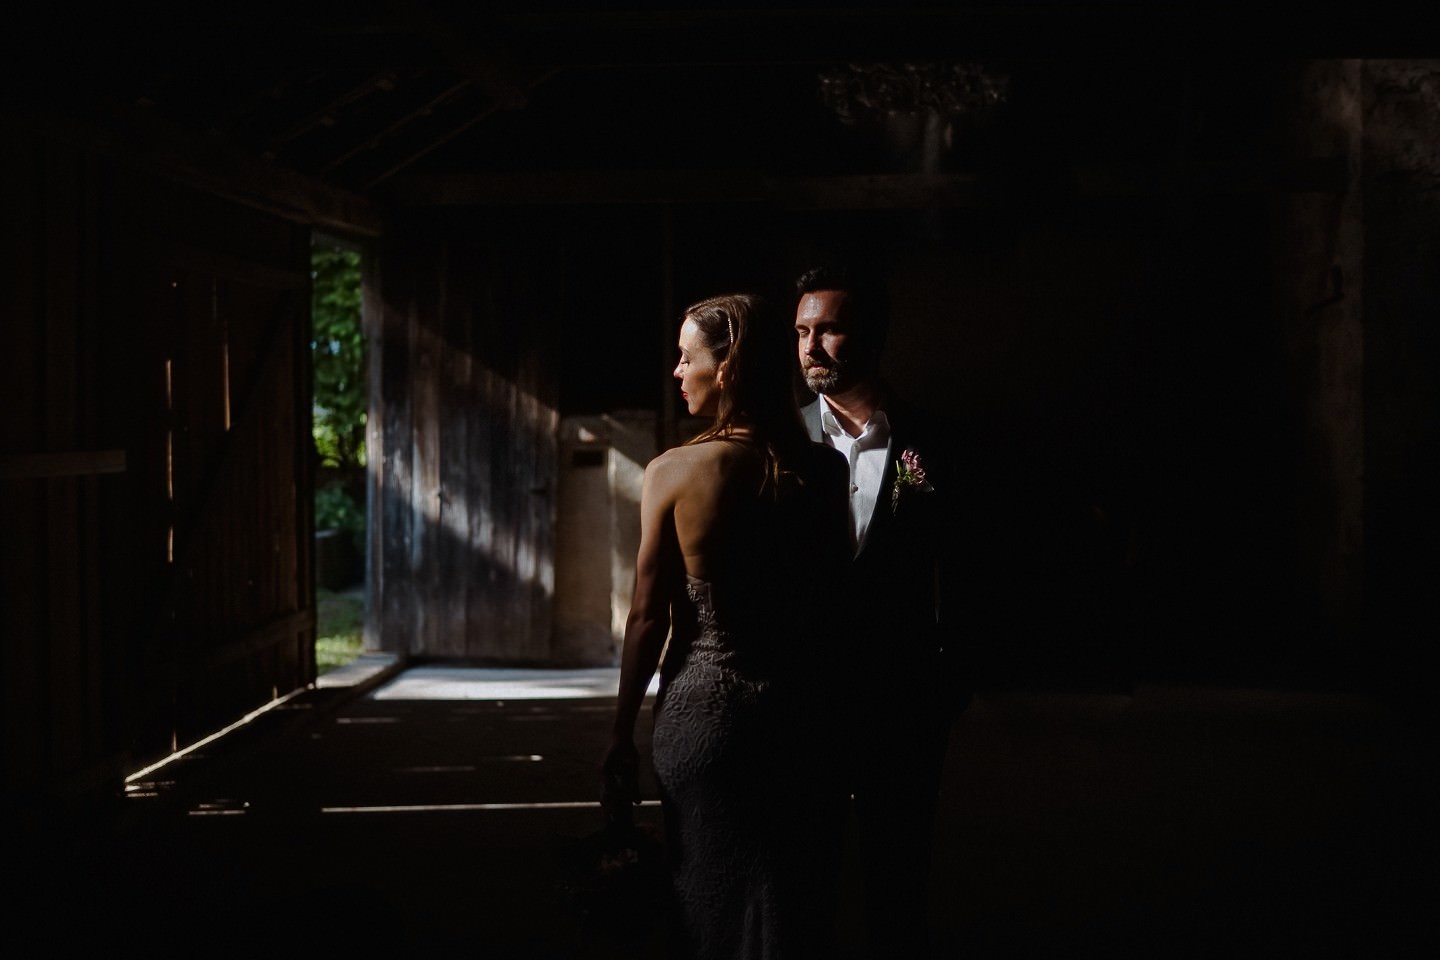 Hochzeitsfotograf im Berthold 57, Hochzeitsportrait in der Scheune in 57 Kraichtal - das Brautpaar steht in einem Strahl aus Licht